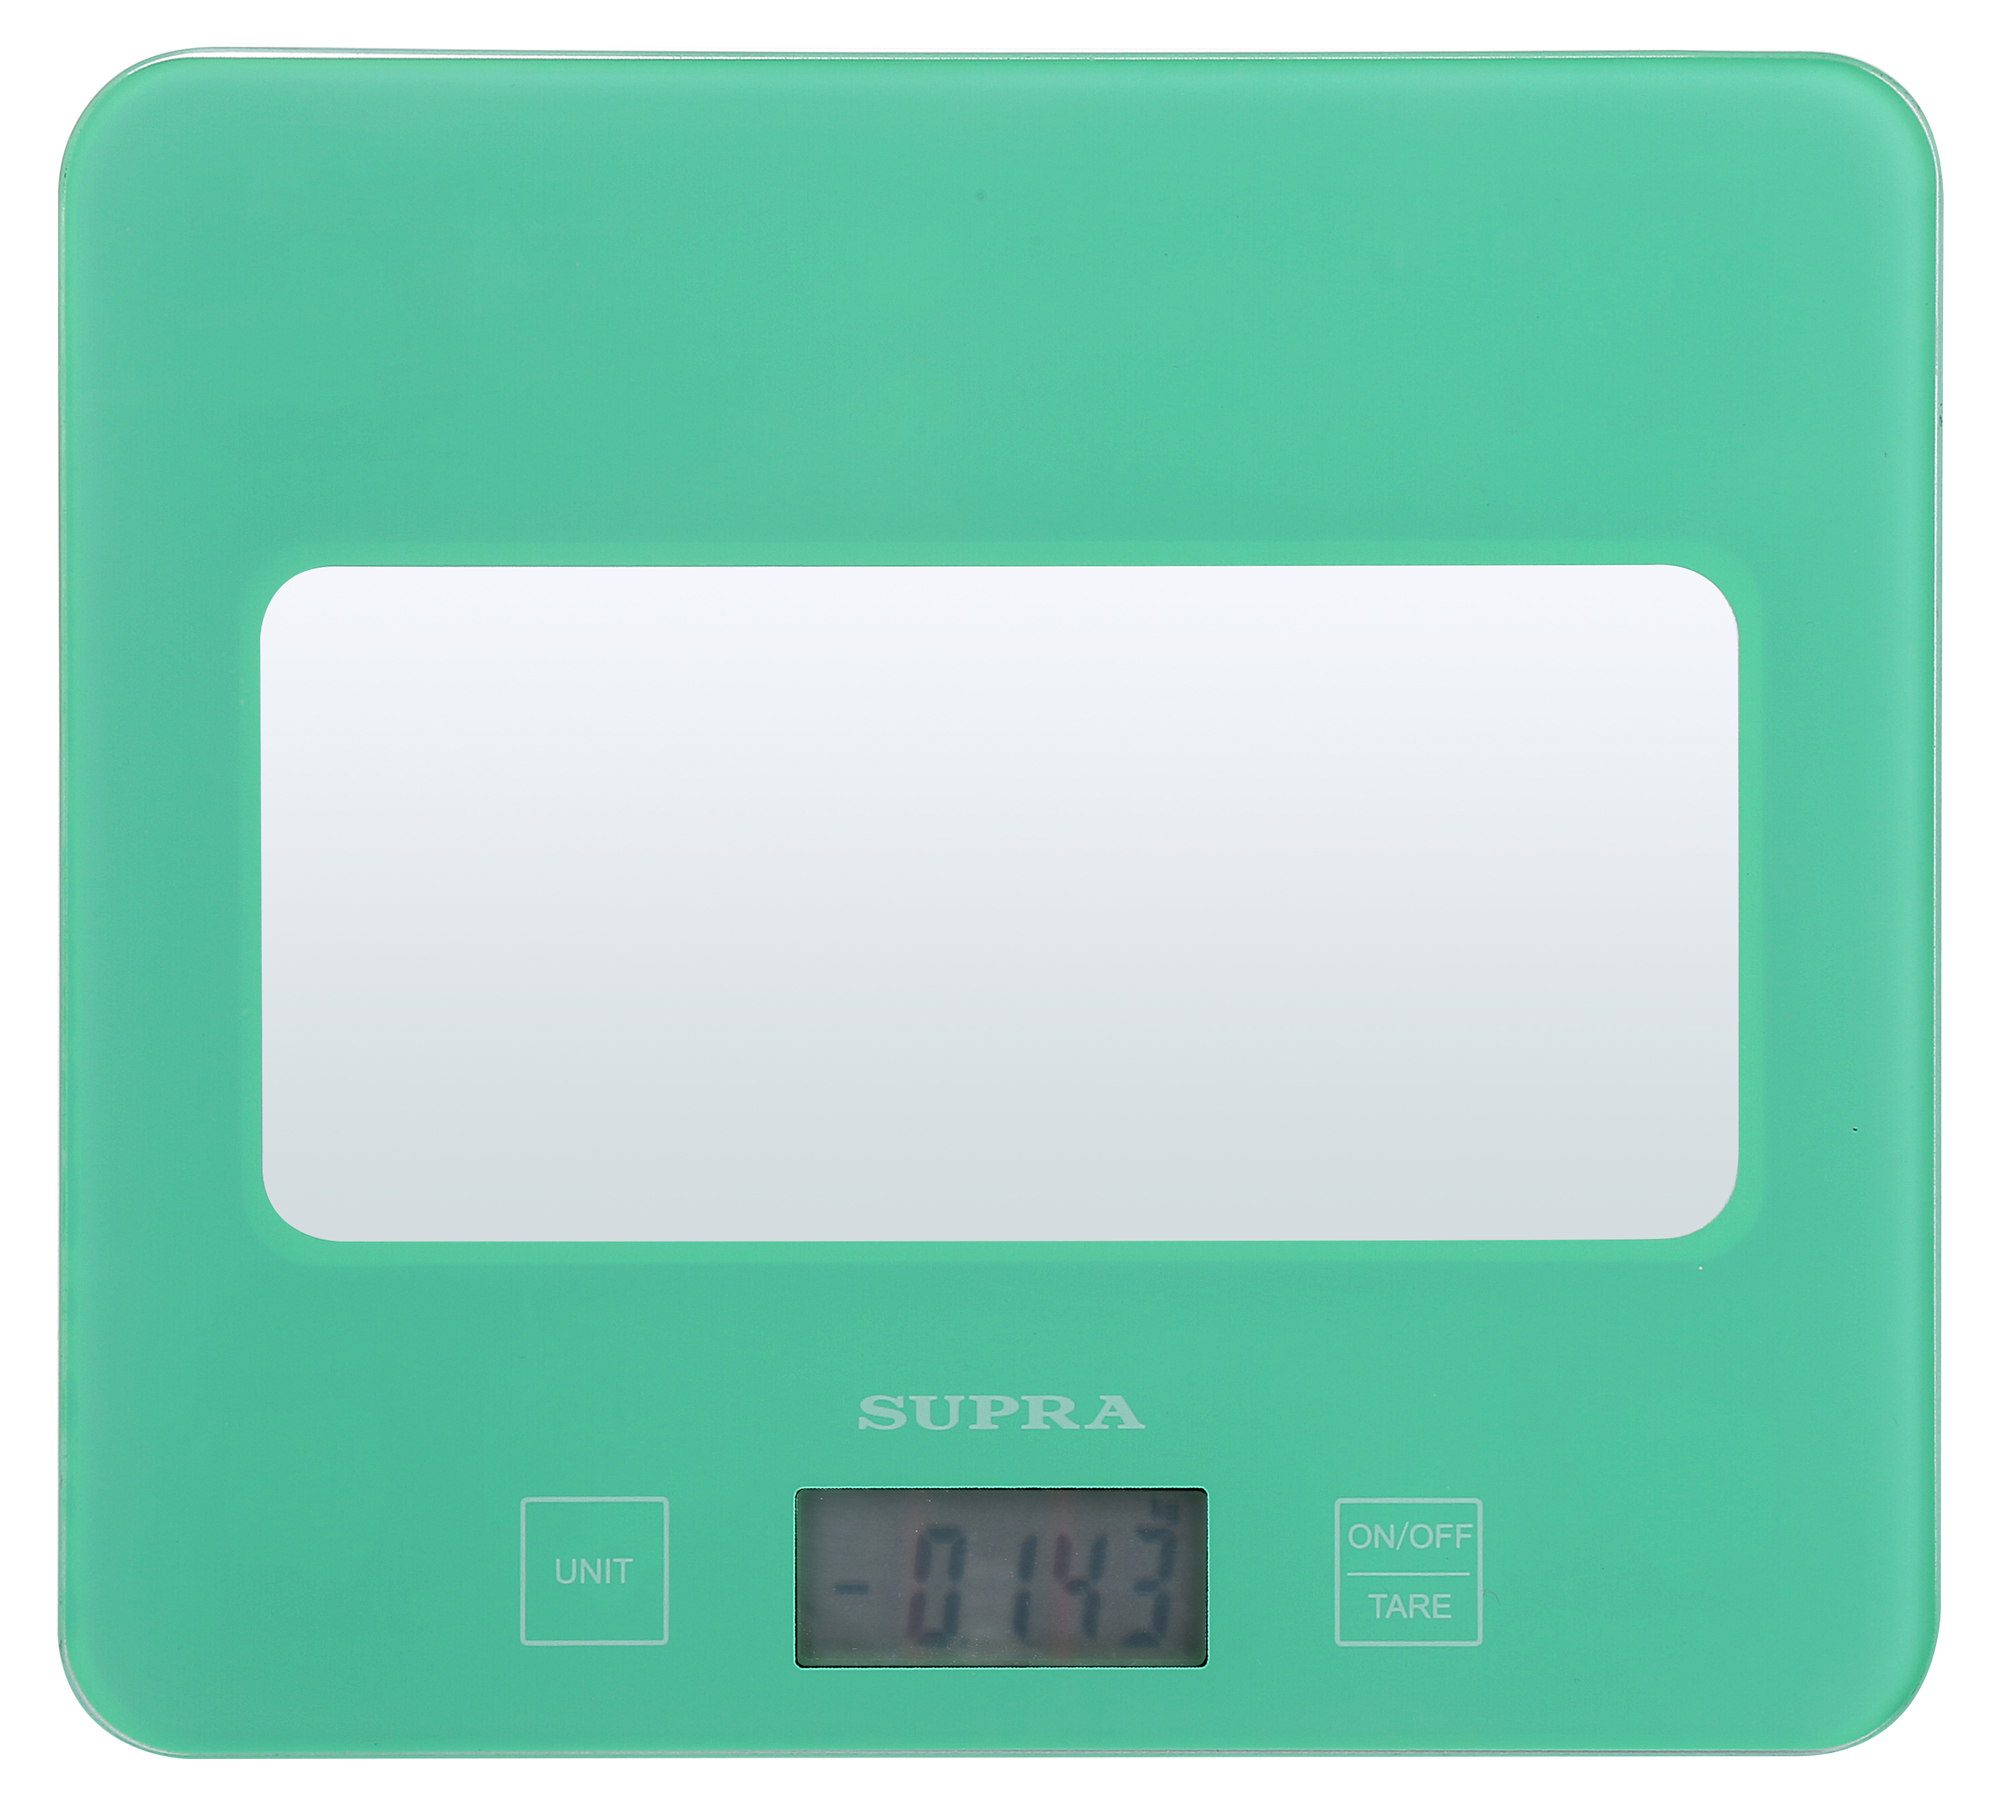 Картинка Кухонные весы SUPRA BSS-4201N по разумной цене купить в интернет магазине mall.su